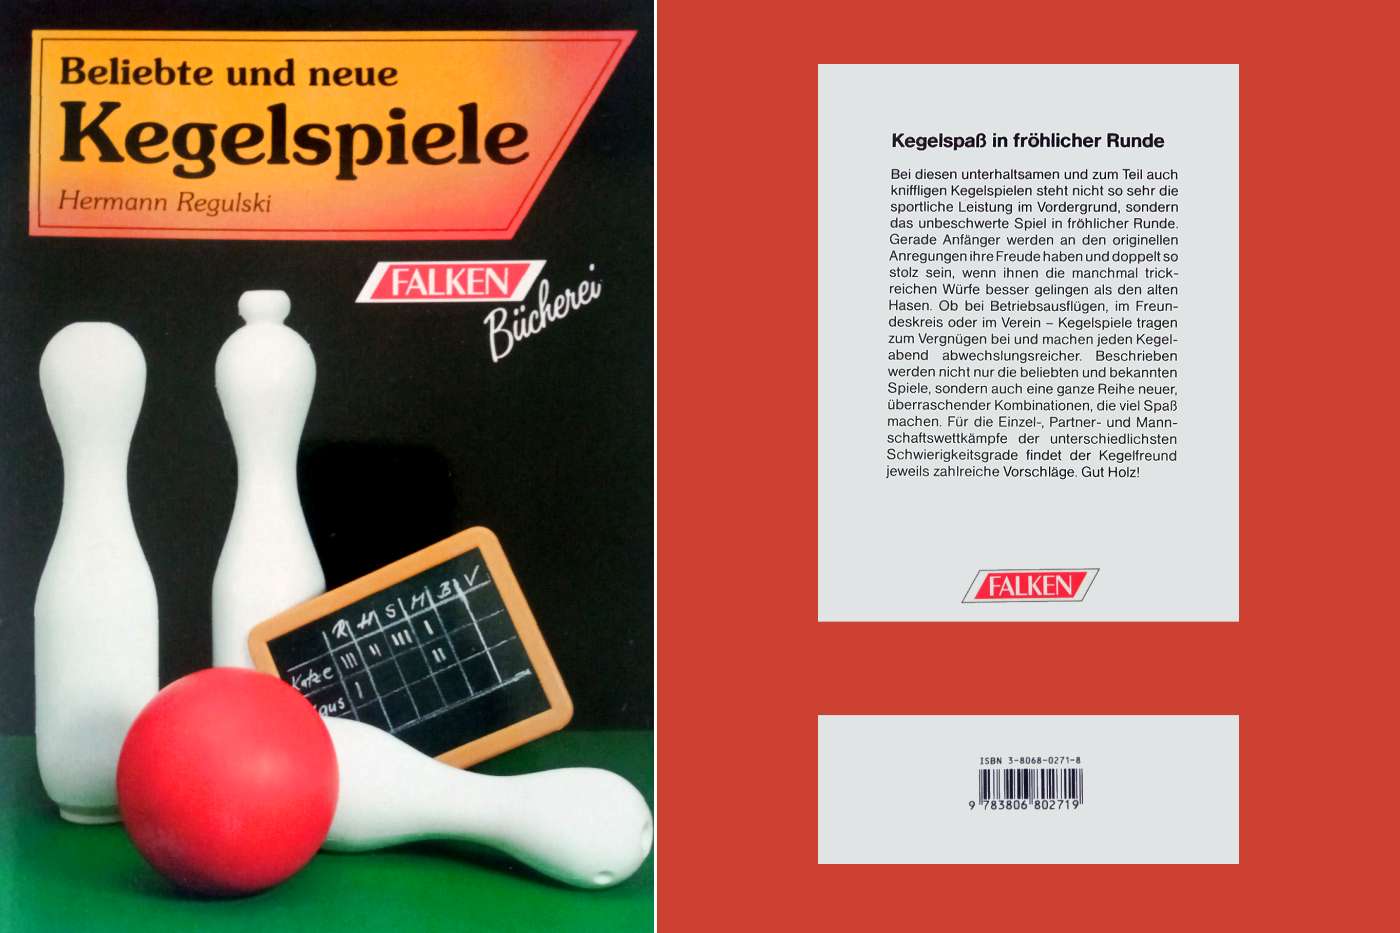 Sachbuch Hundert beliebte neue Kegelspiele (Falken Bücherei Verlag)